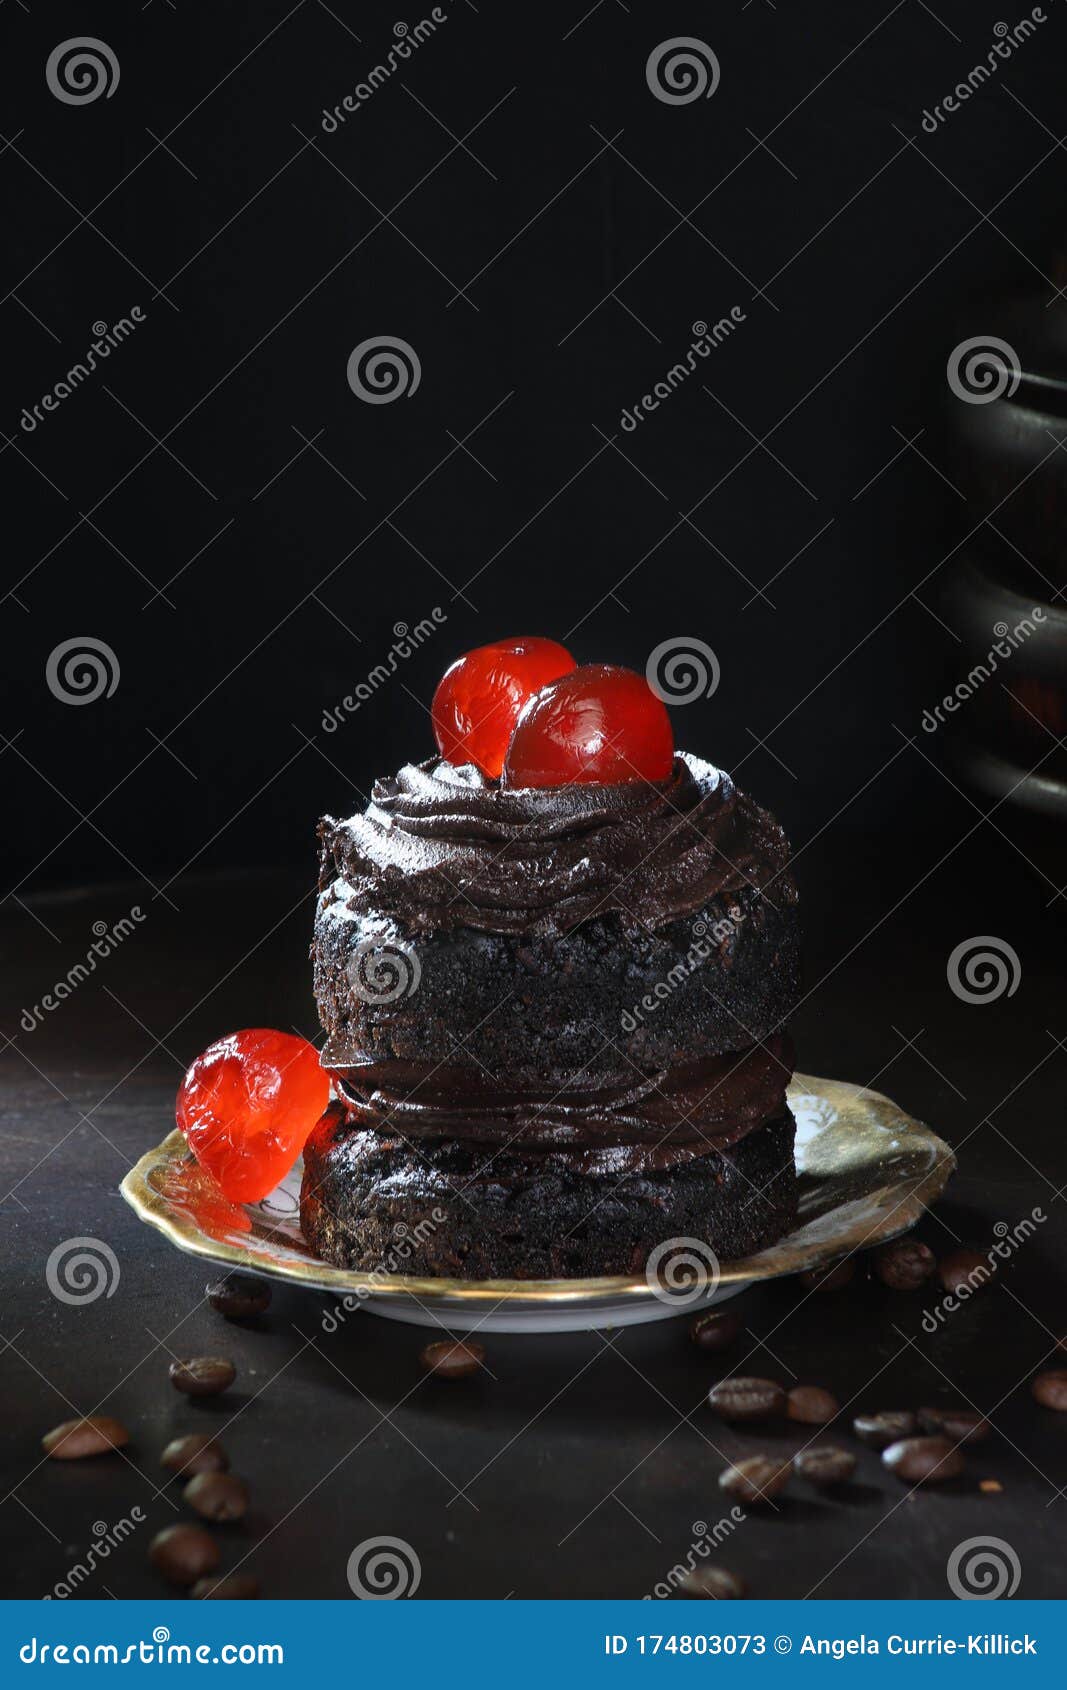 Mini Pastel De Chocolate Con Cerezas Glace Y Granos De Café En Primer Plano  Imagen de archivo - Imagen de dulce, alimento: 174803073